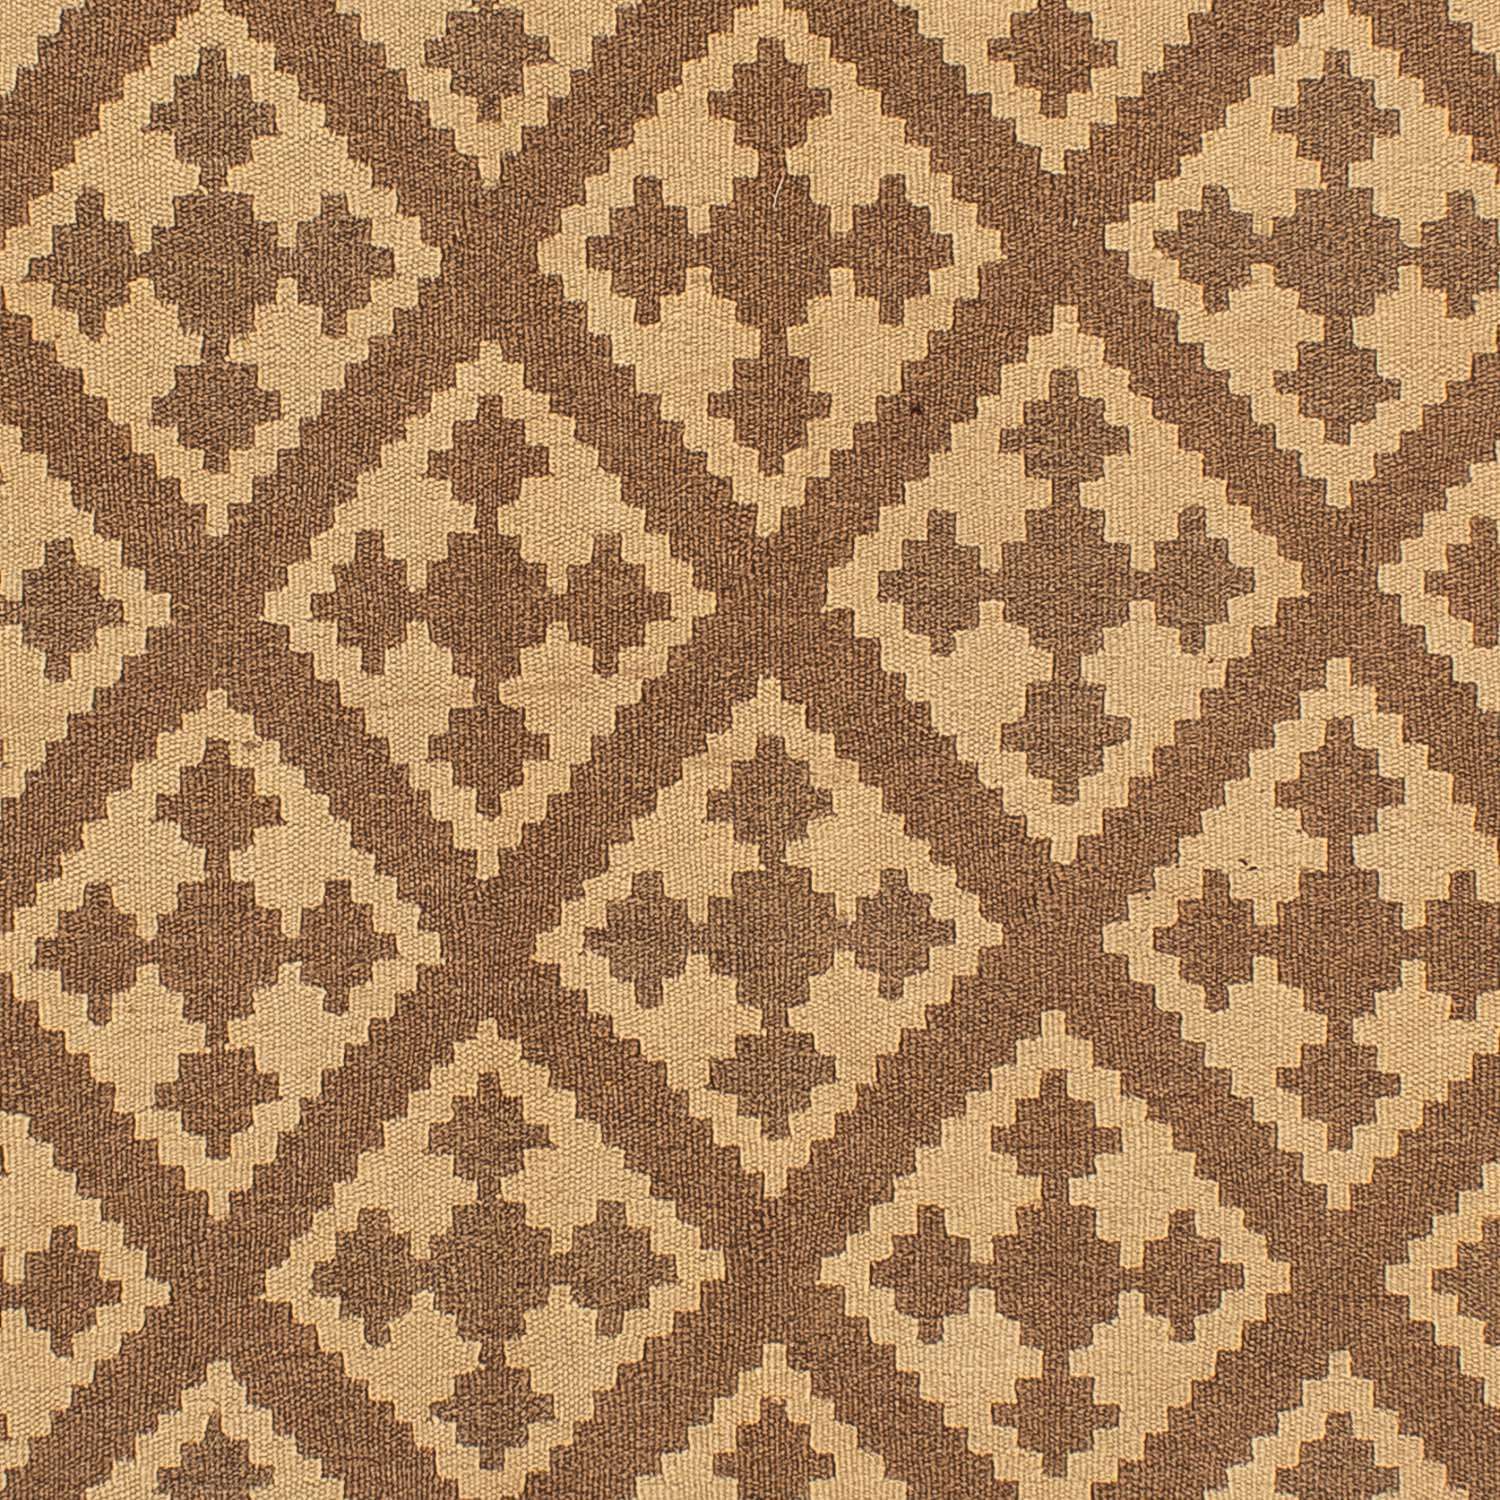 Kelim-tæppe - orientalsk - 212 x 163 cm - lys brun